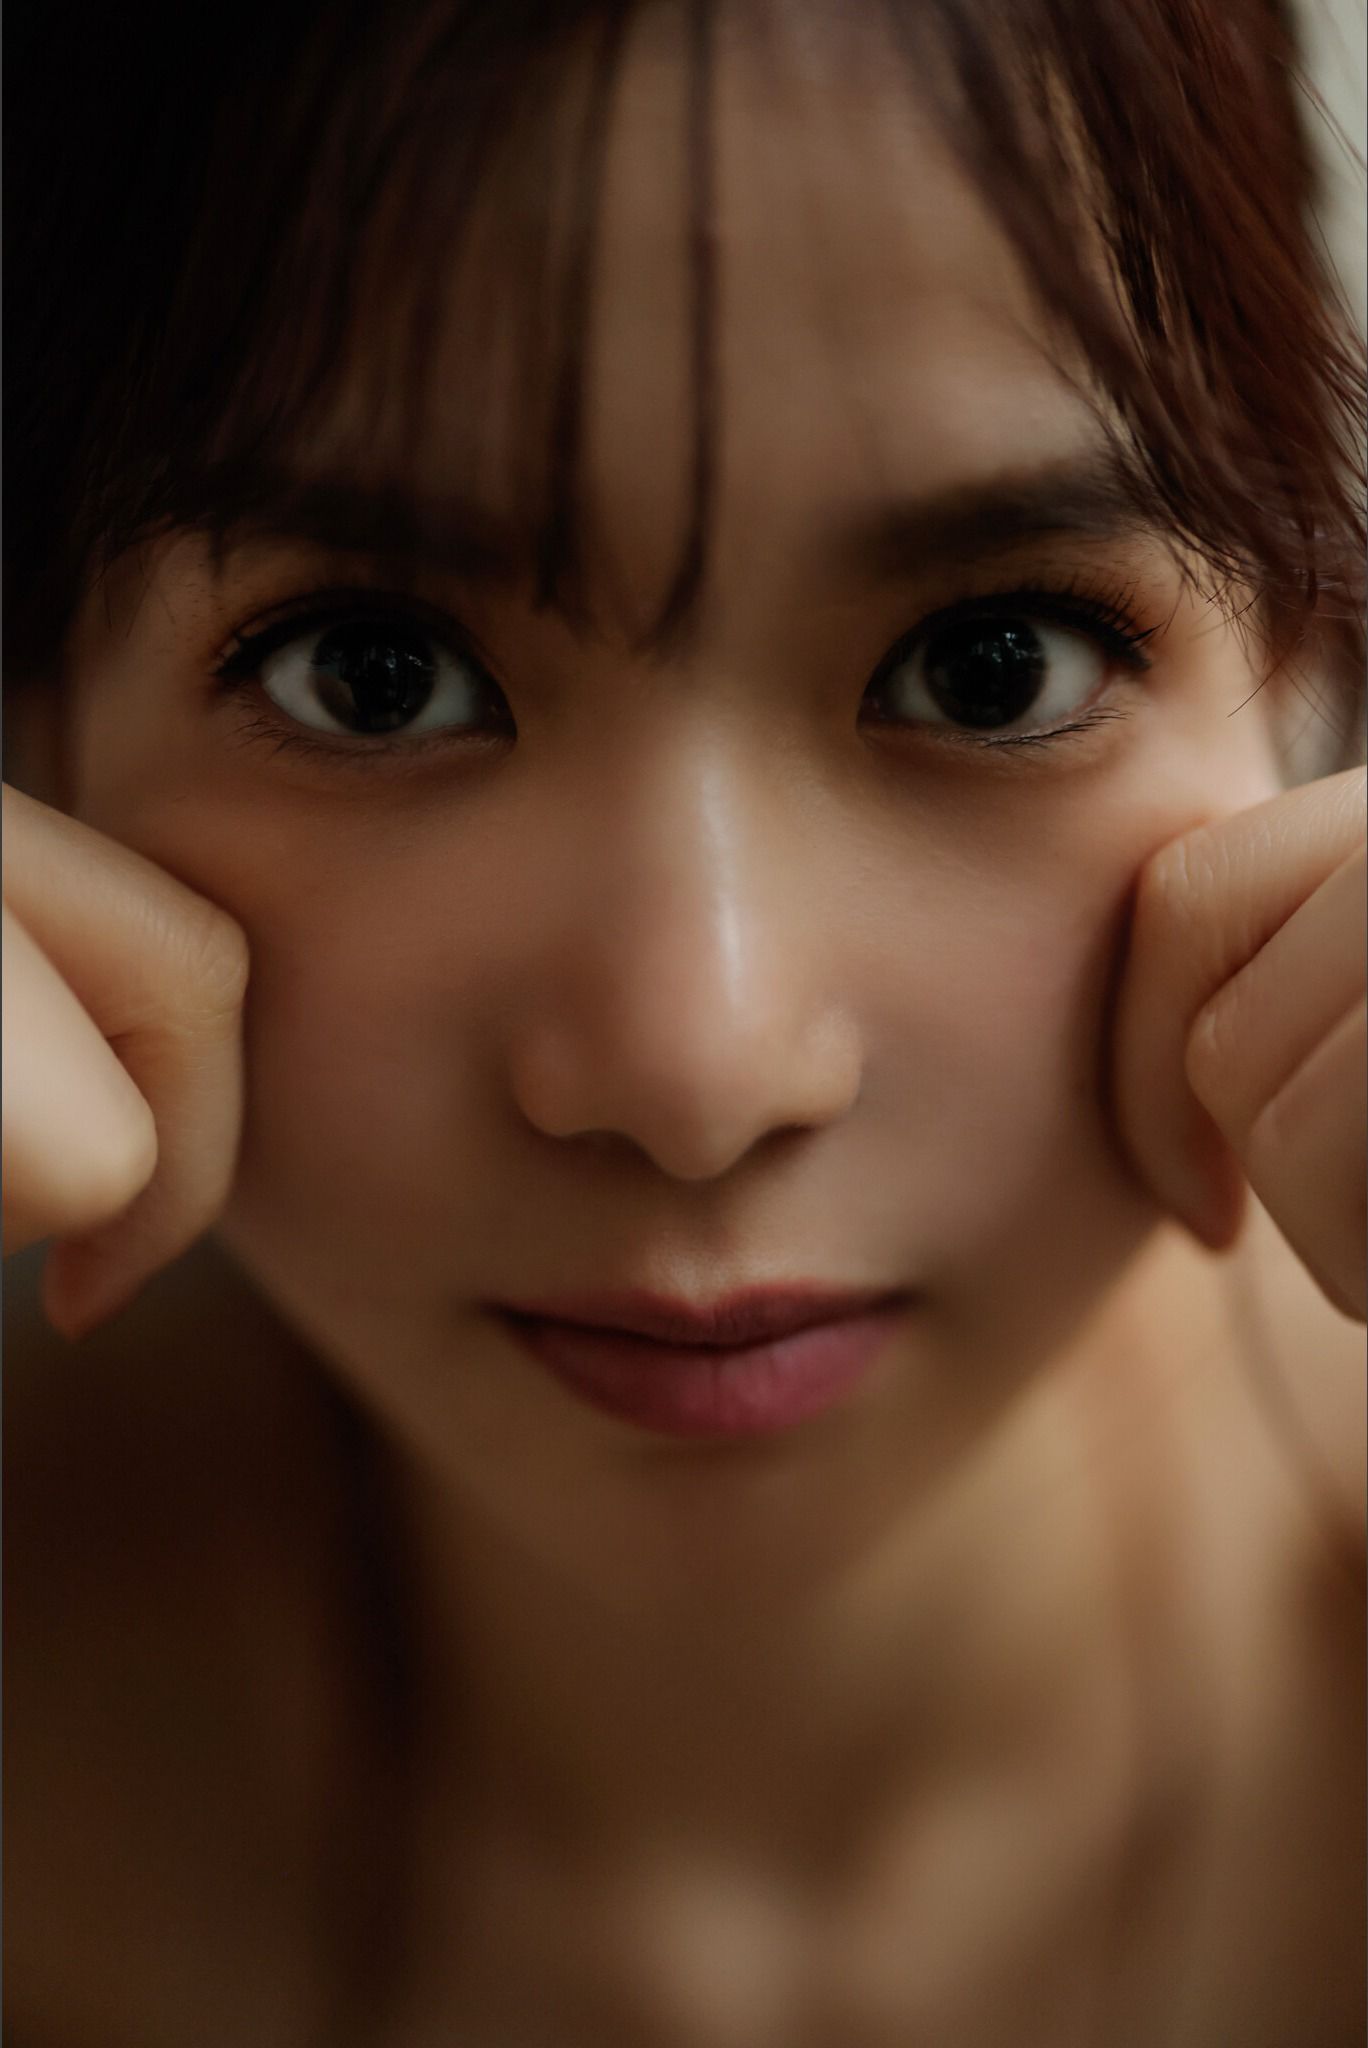 Riko Matsudaira 松平璃子 - Glossy and sexy 艶っぽくて、色っぽい。 vol.2/(84P)